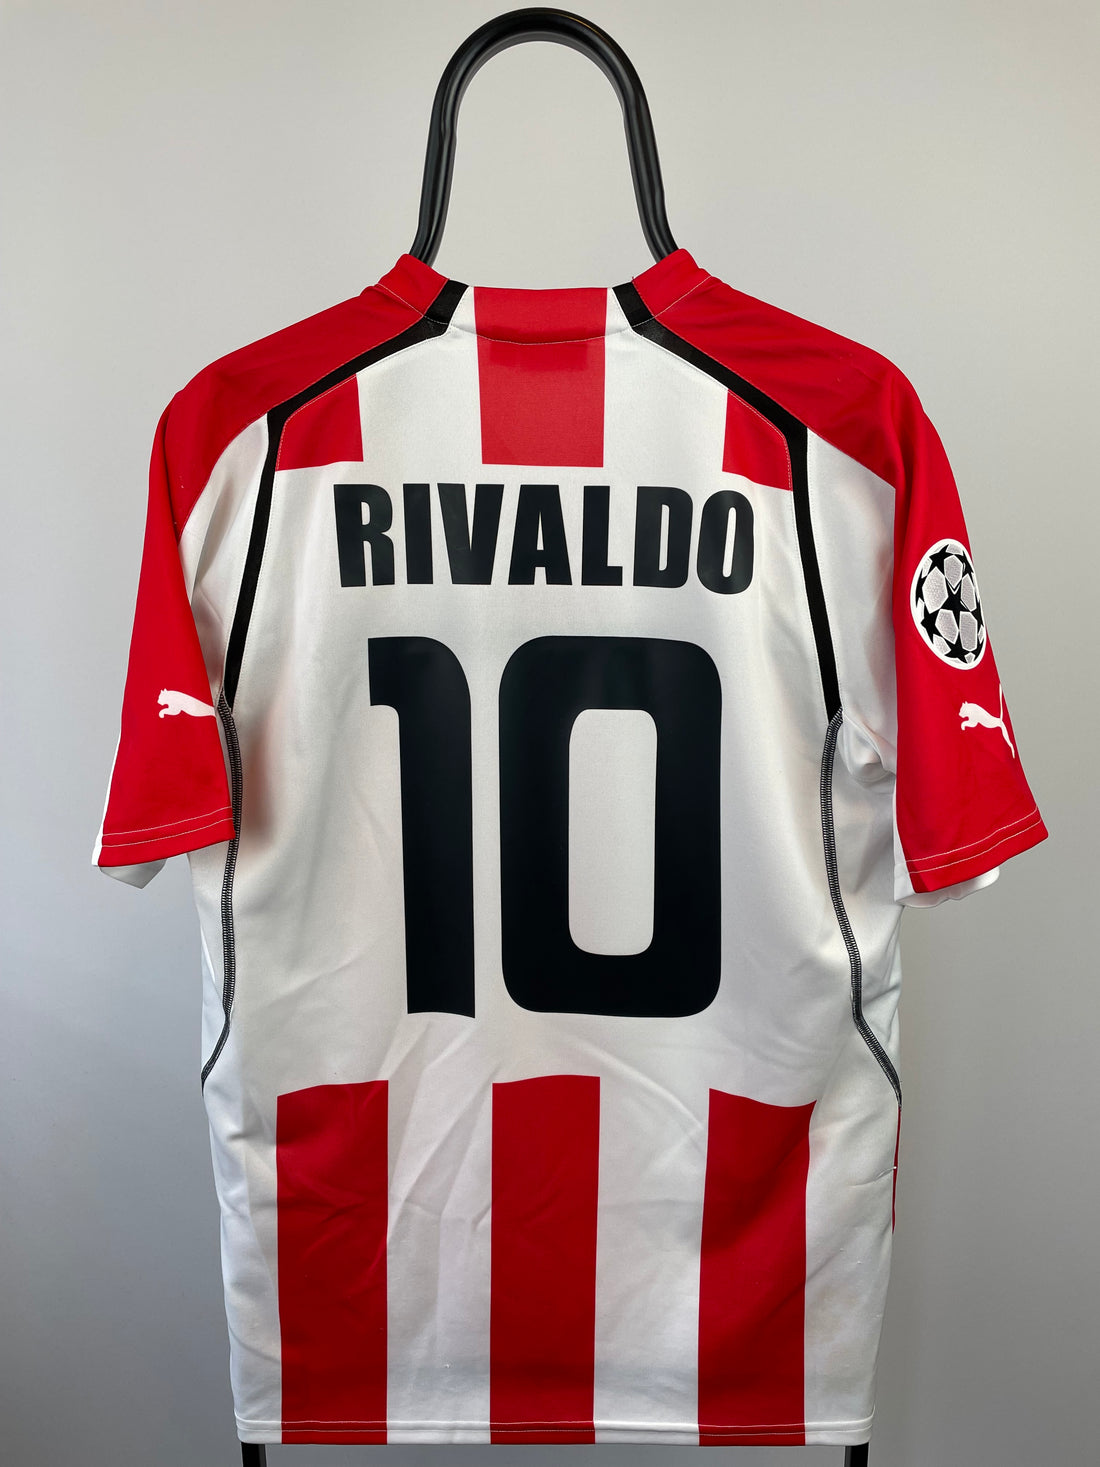 Rivaldo Olympiakos 05/06 hjemmebanetrøje - L